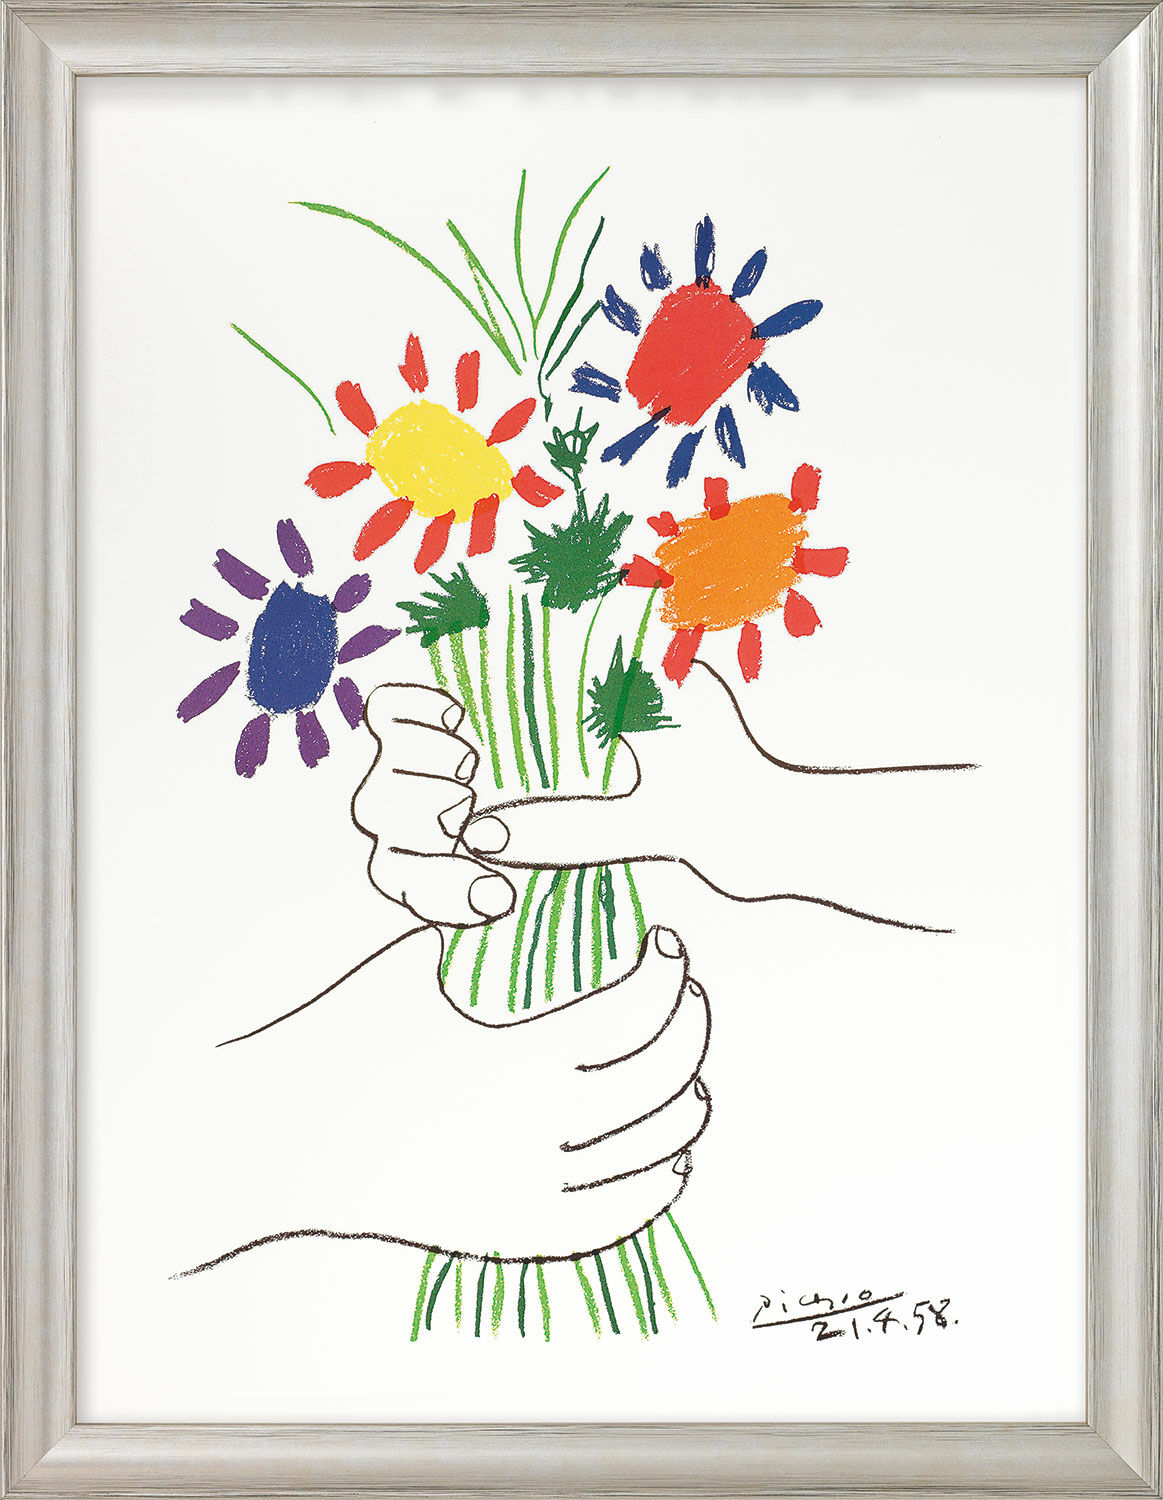 Beeld "Handen met boeket bloemen" (1958), ingelijst von Pablo Picasso